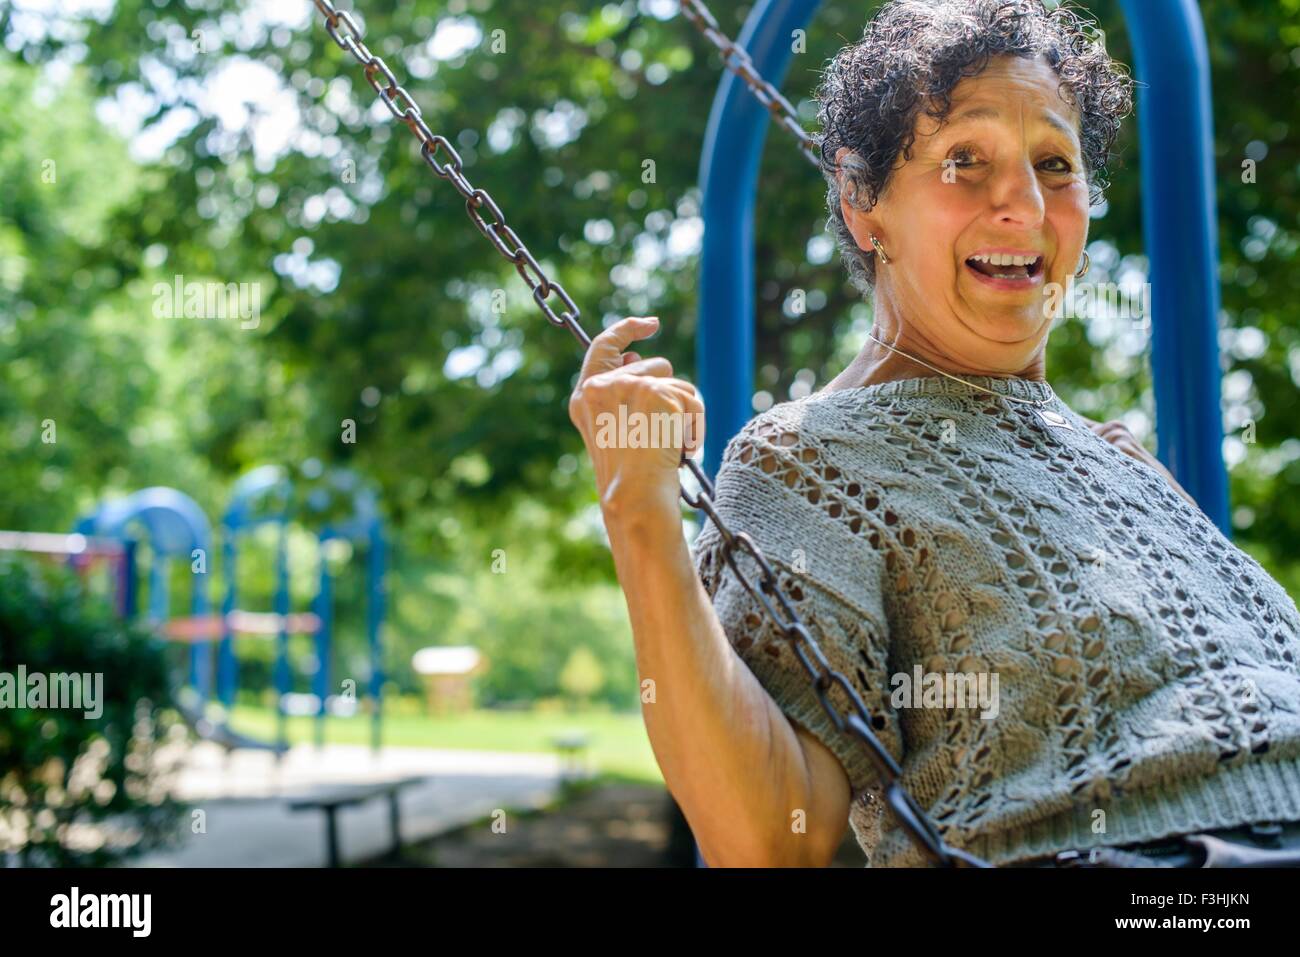 Portrait of senior woman en jouant sur swing park Banque D'Images